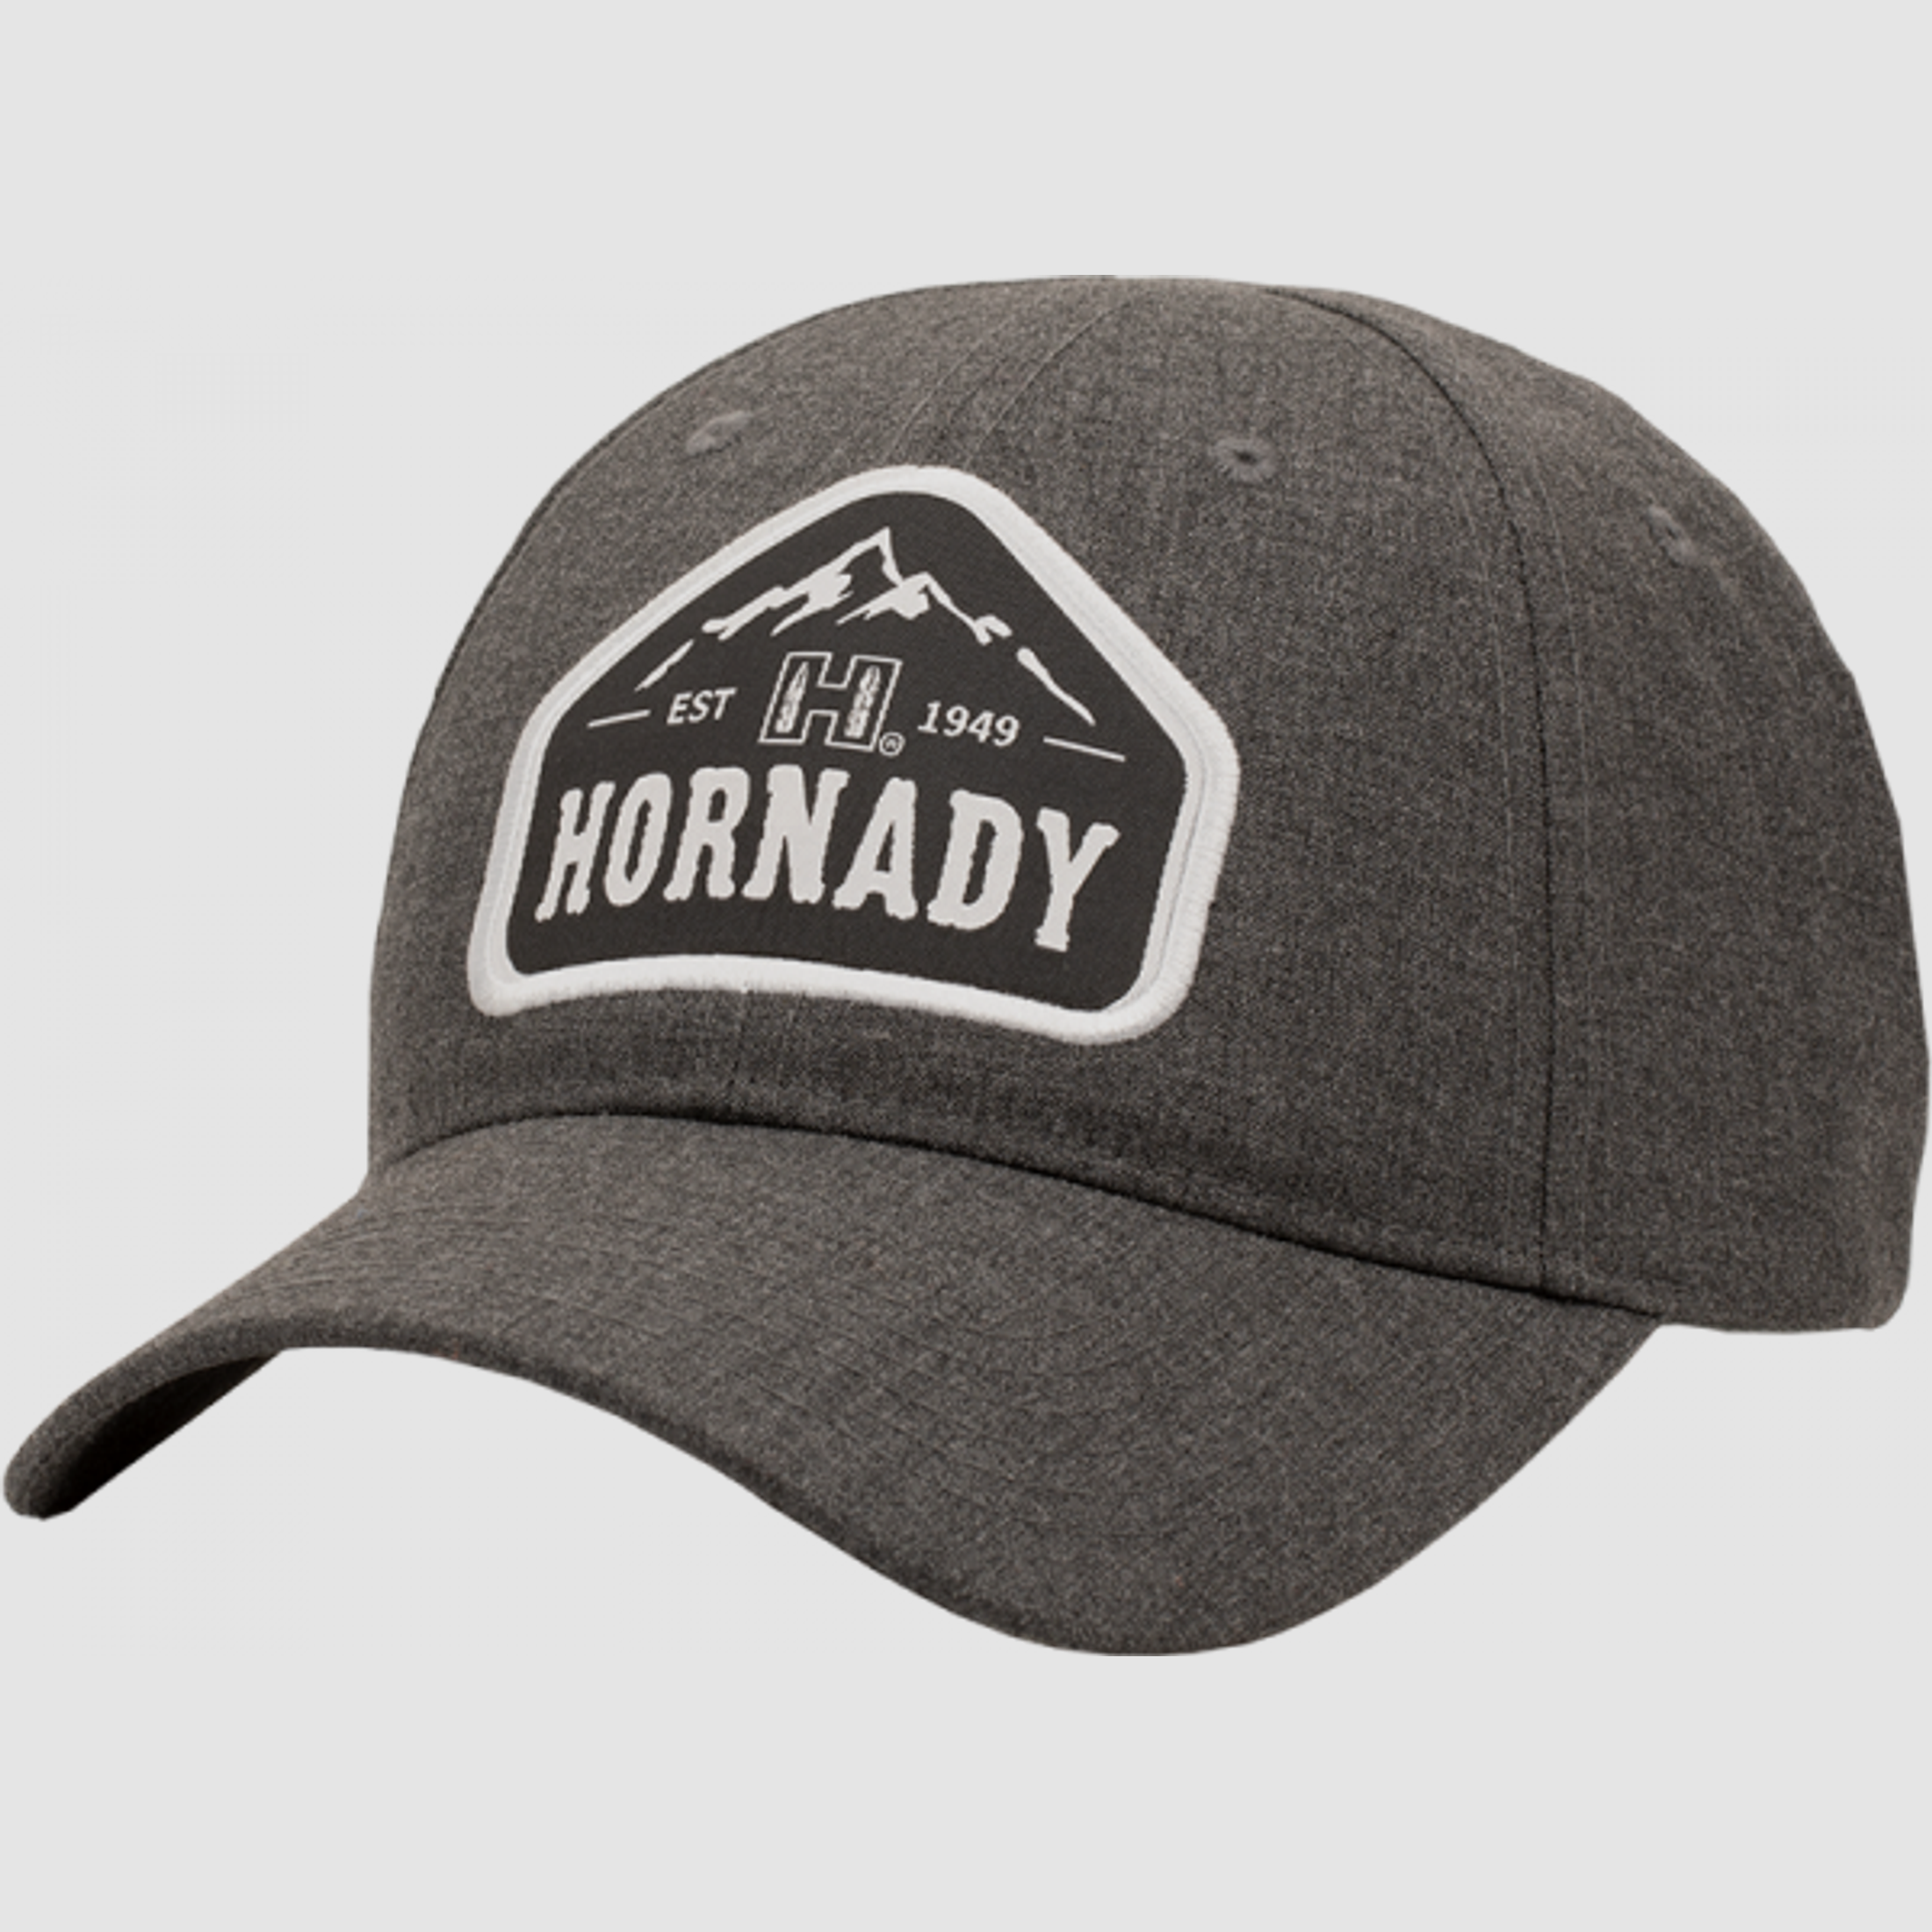 Hornady Gray Mountain Basecap